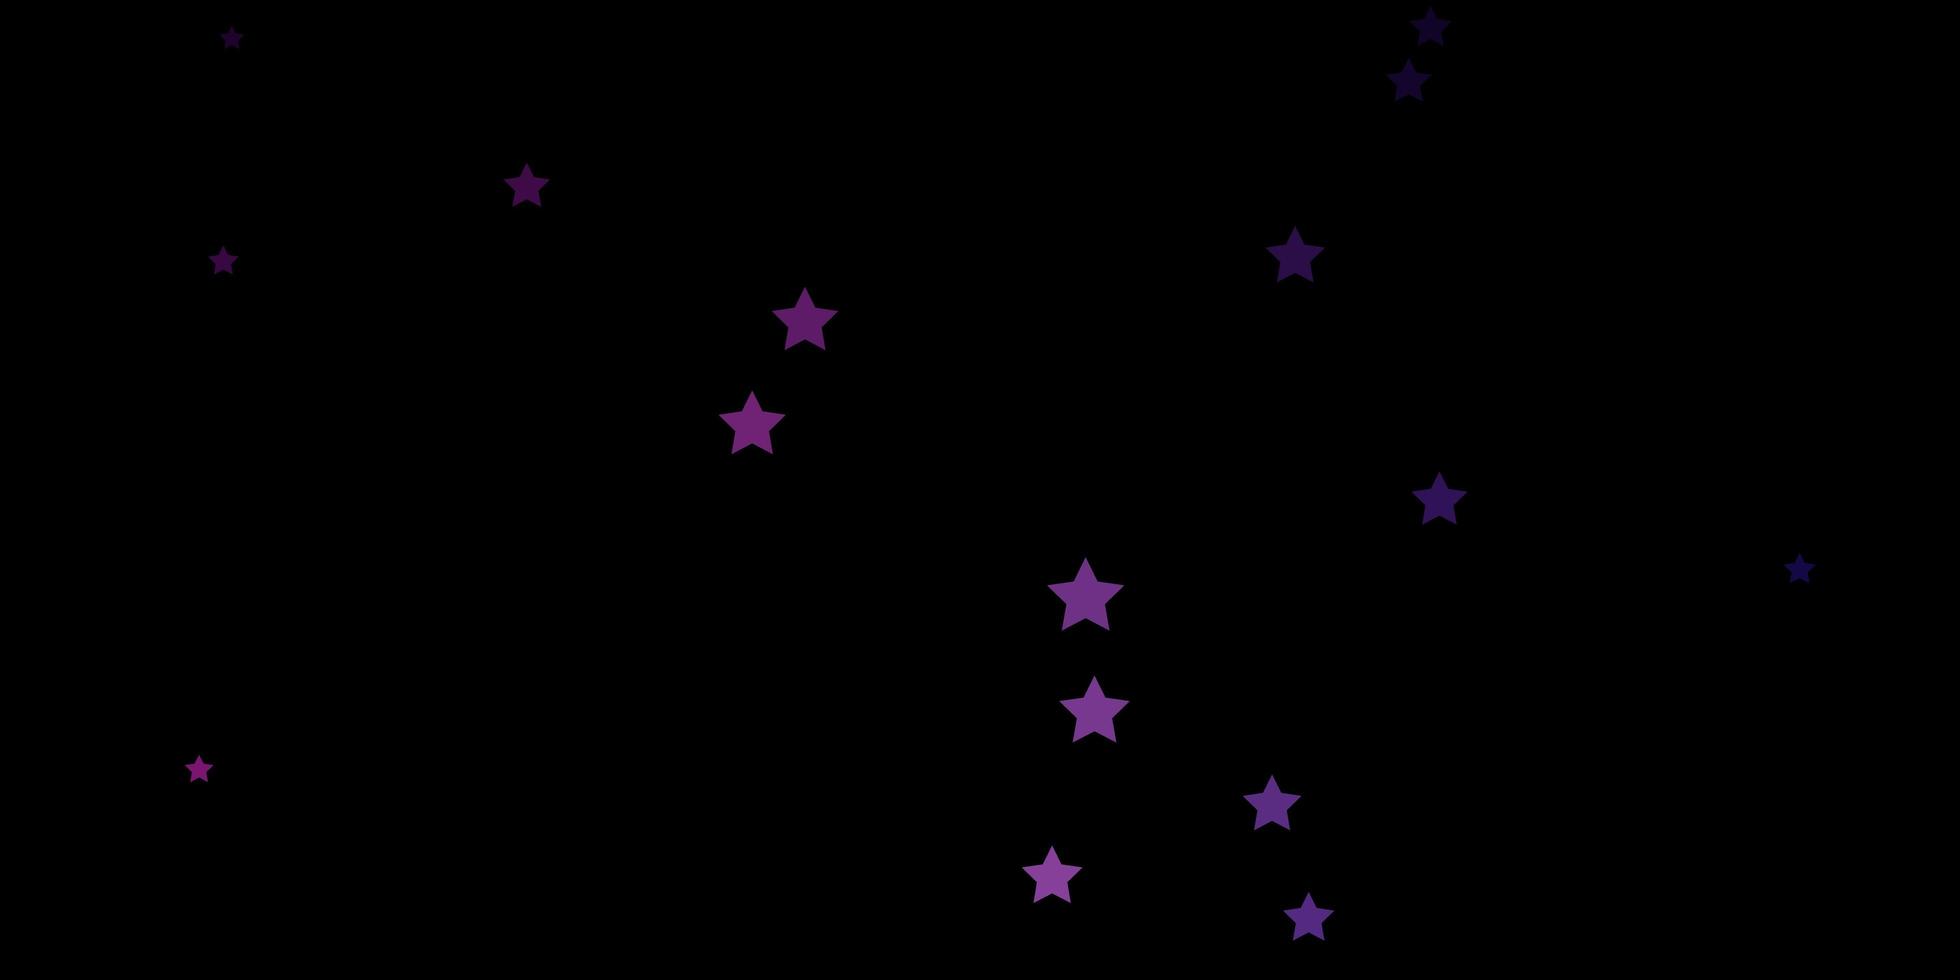 La plantilla de vector de color rosa oscuro con estrellas de neón difumina el diseño decorativo en un estilo simple con un patrón de estrellas para folletos de anuncios de año nuevo